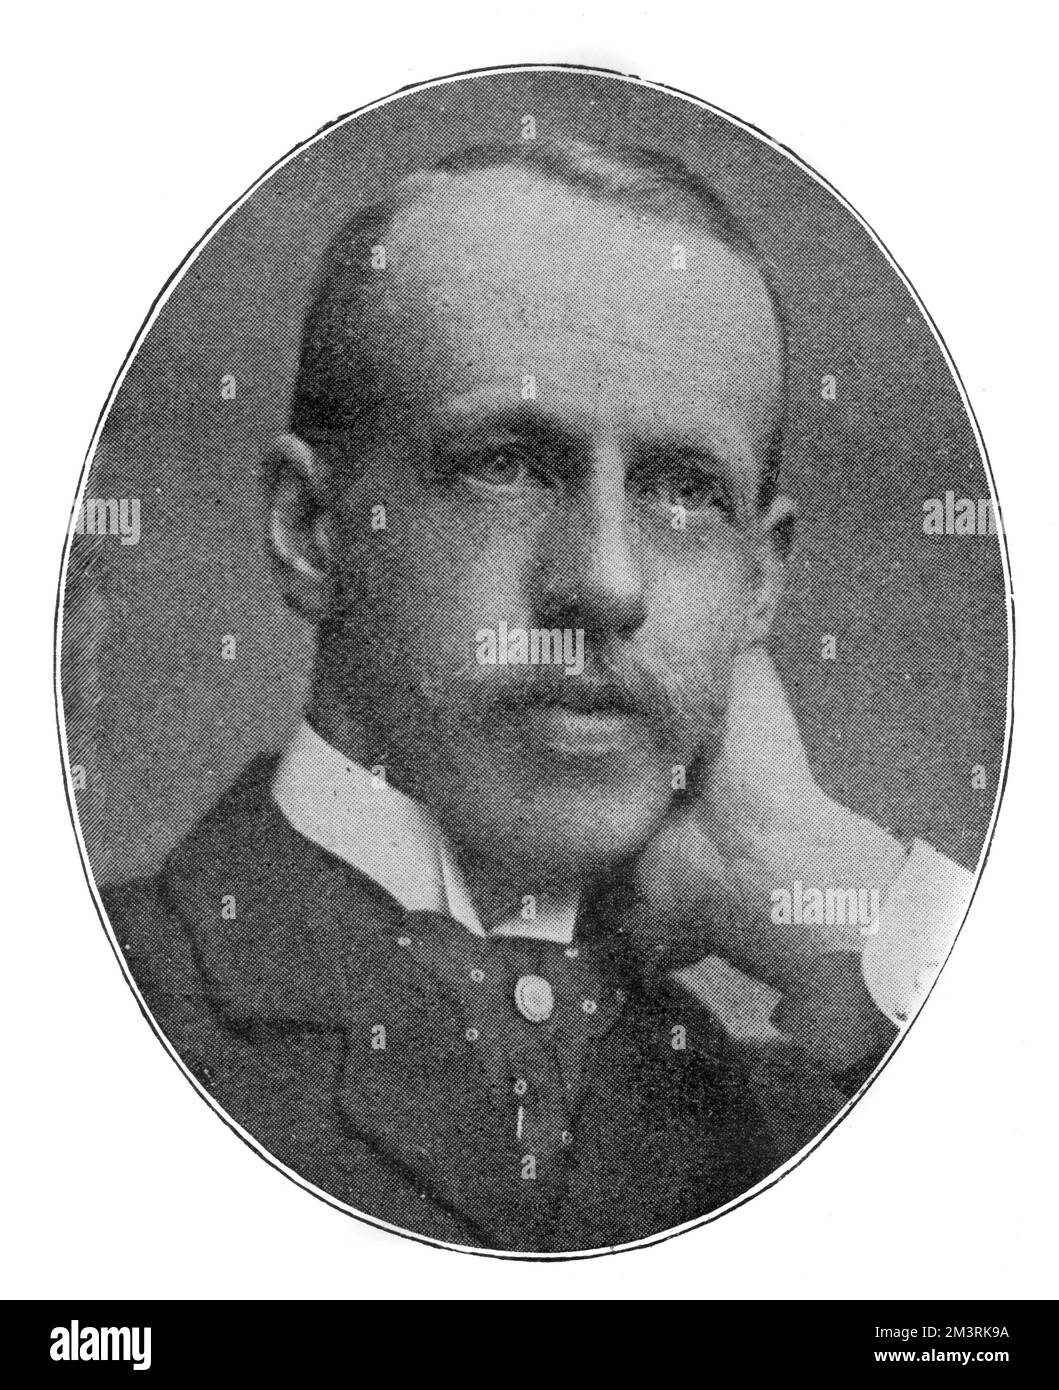 Sir John Murray IV (1851 - 1928), éditeur de Queen Victoria, quatrième scion de la plus ancienne maison d'édition de Londres. 1899 Banque D'Images